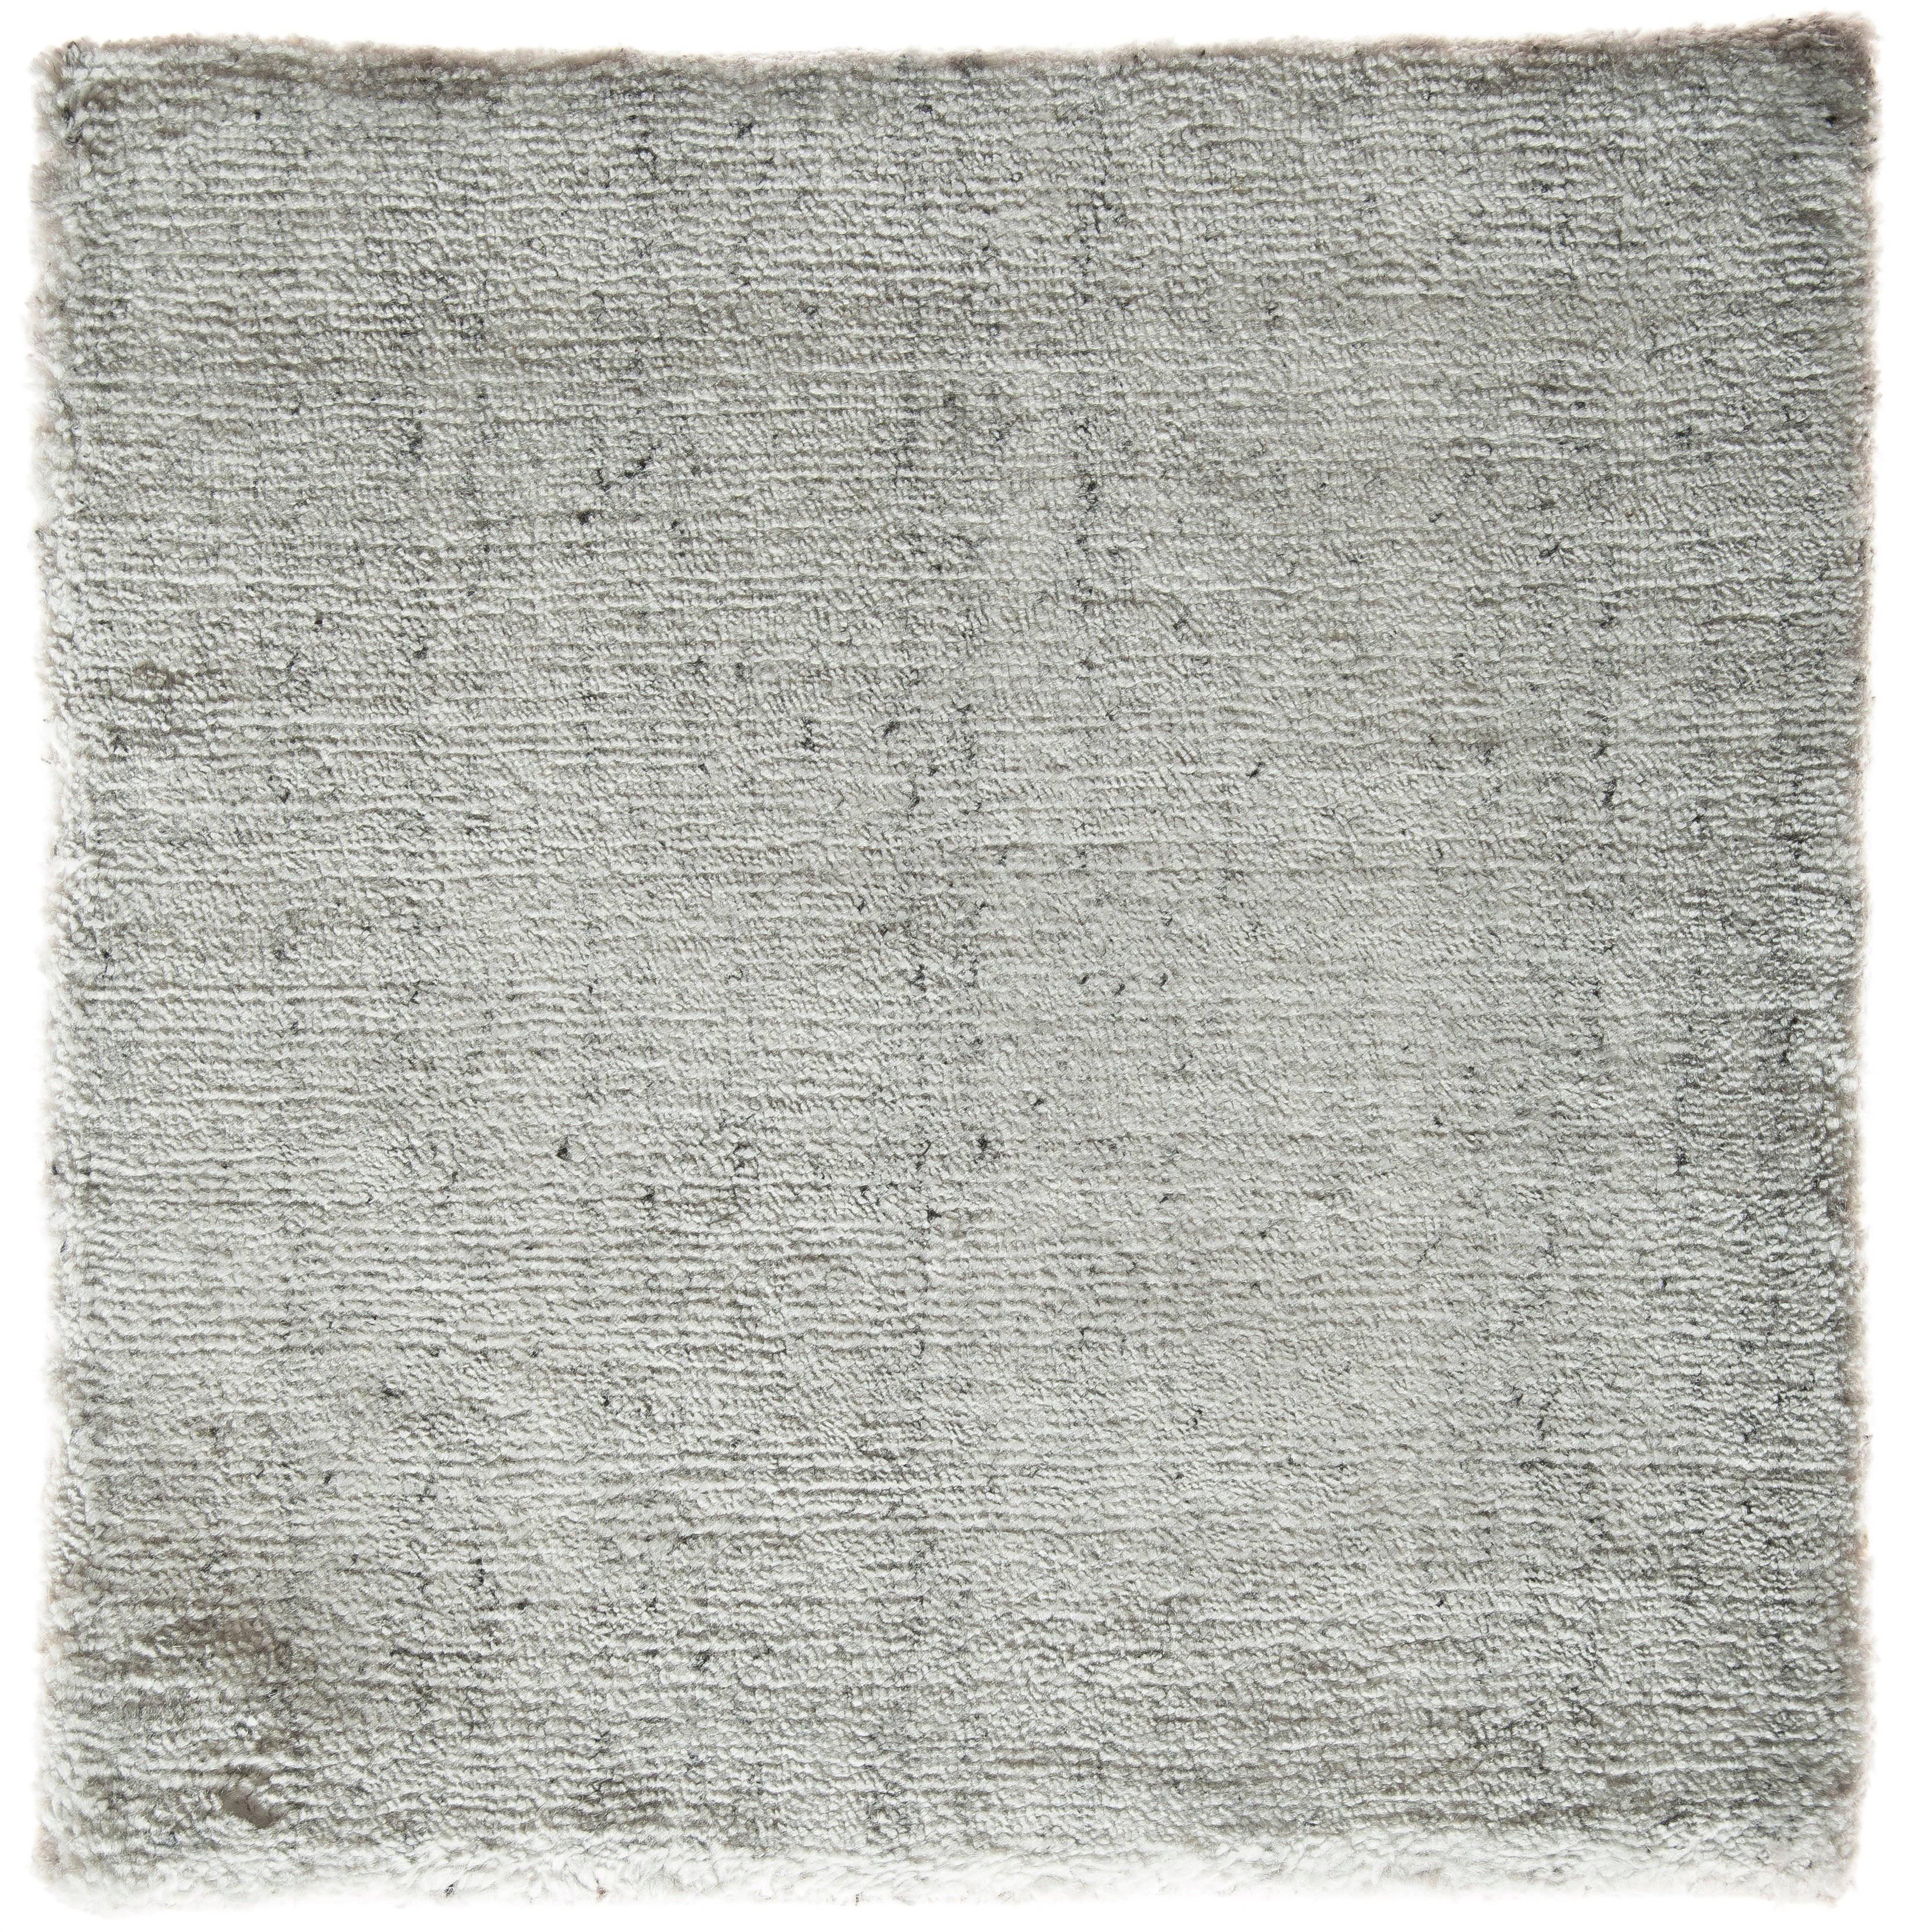 Tapis moderniste blanc argenté en soie de bambou neutre tissée à la main, de tailles personnalisées